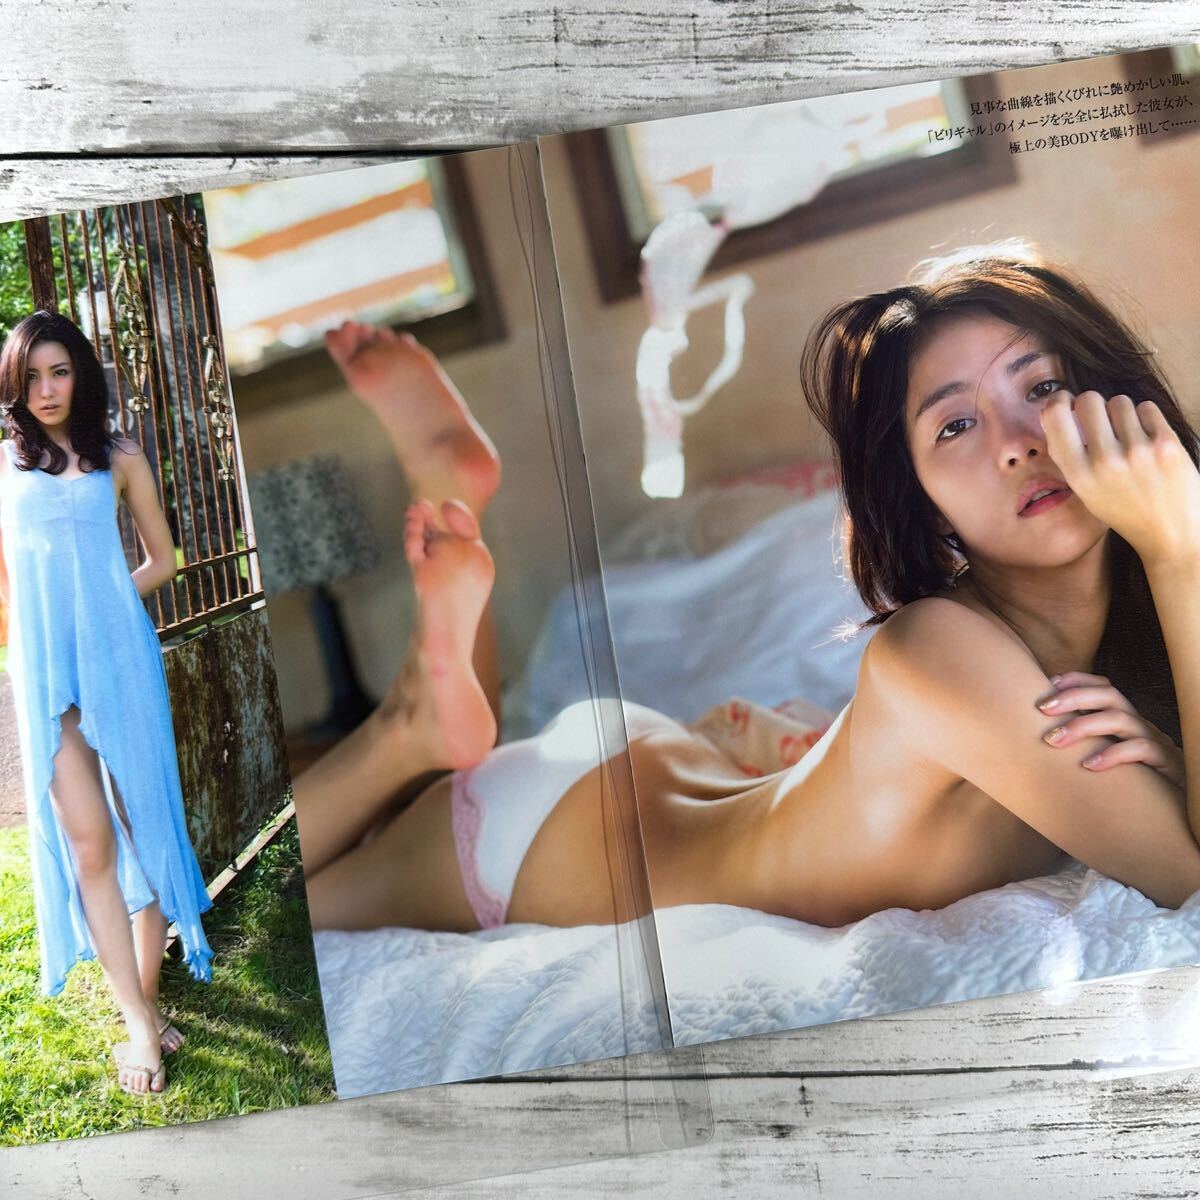 [ высокое качество ламинирование отделка ][ Ishikawa .] журнал вырезки 5P A4 плёнка купальный костюм bikini model актер женщина super 